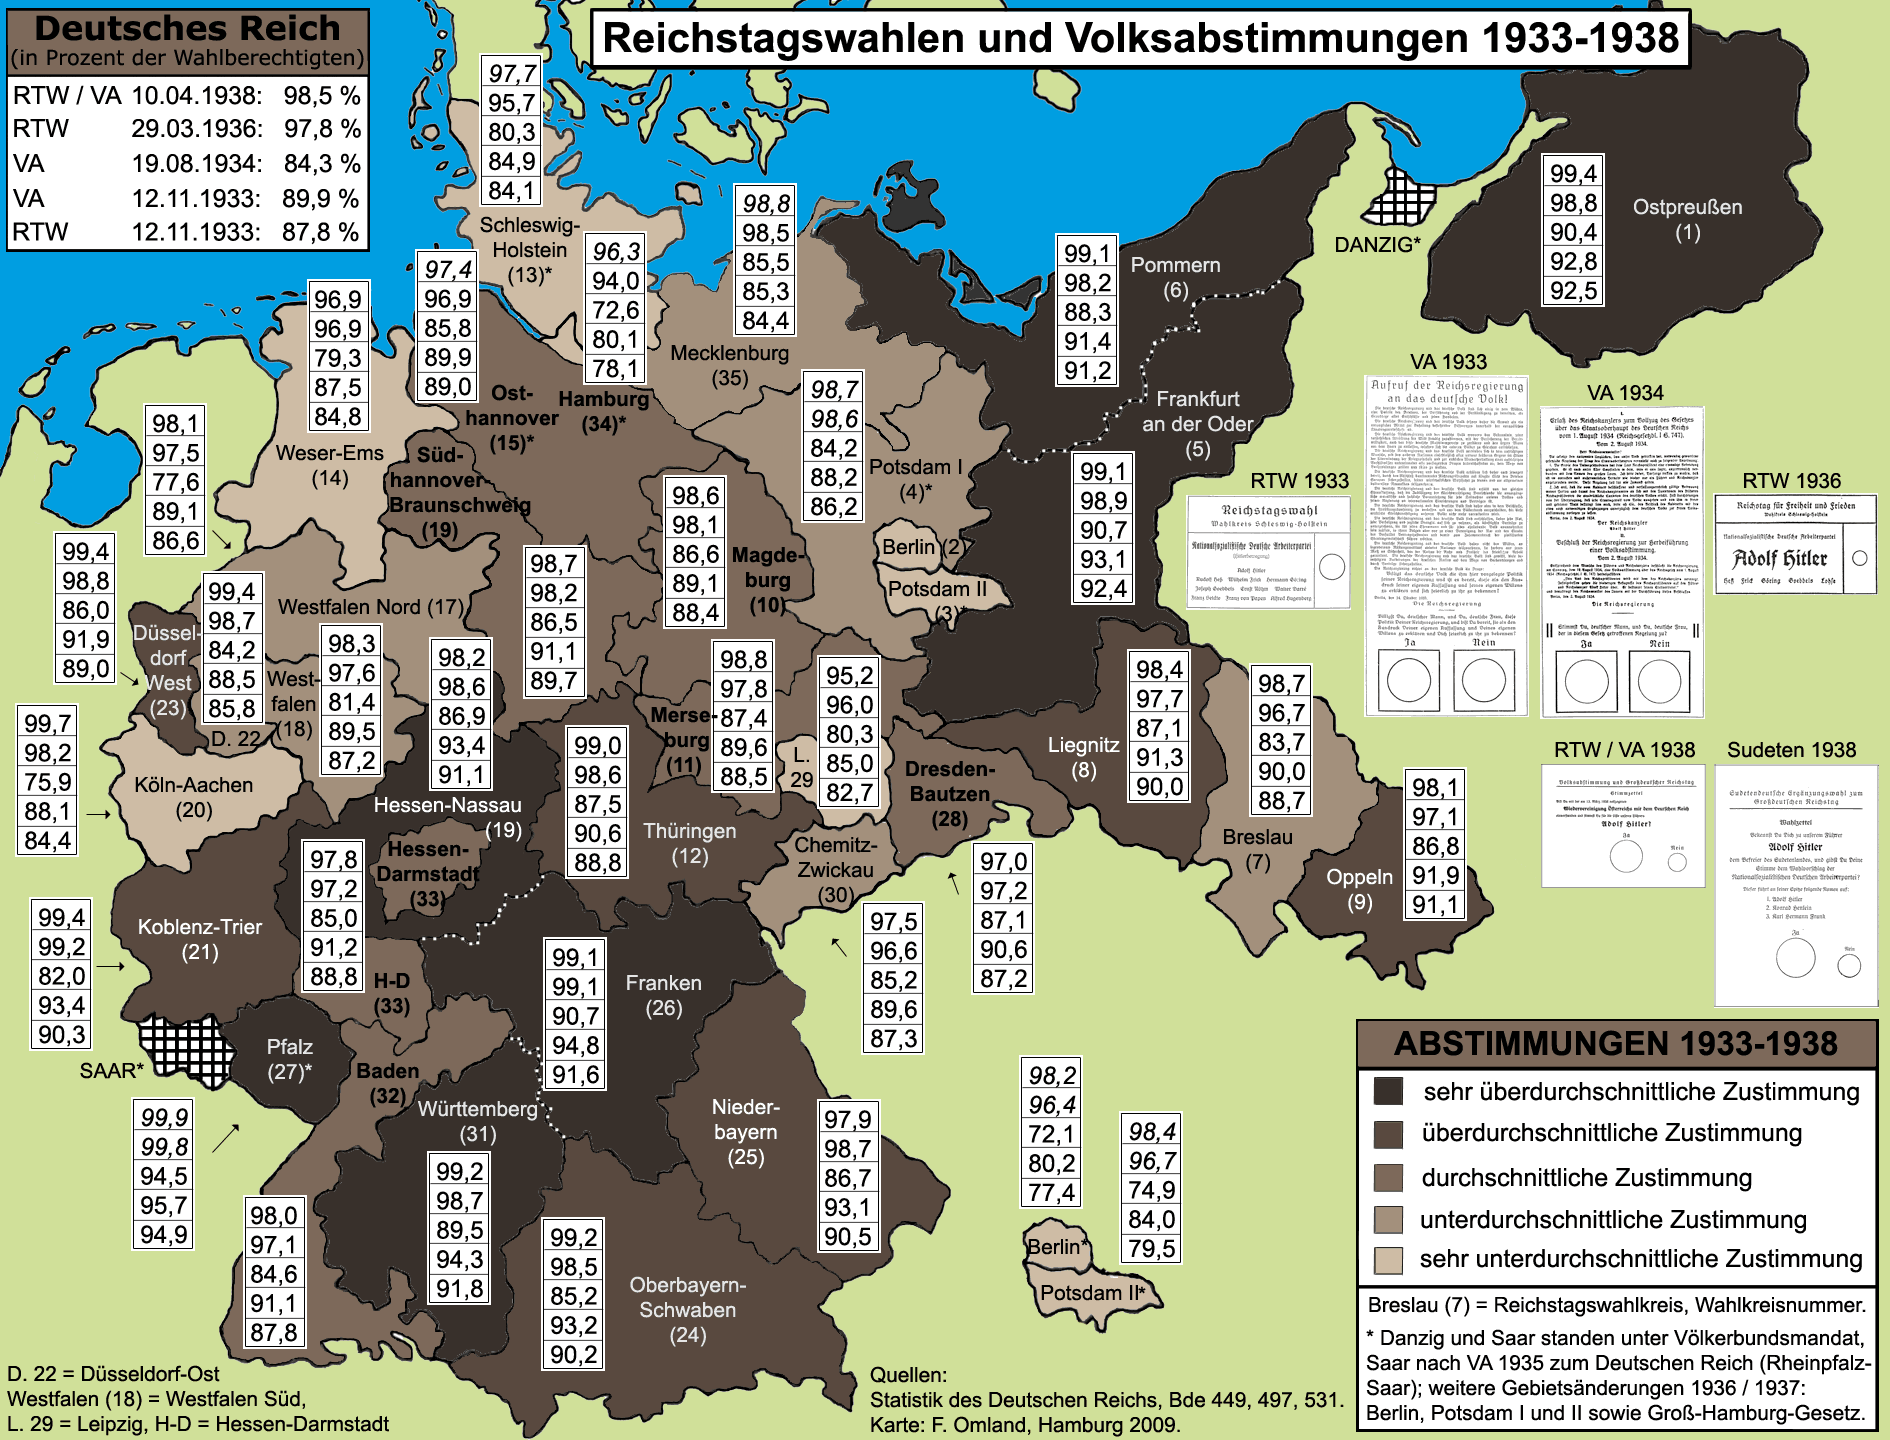 Ergebnisse bei den Abstimmungen im Nationalsozialismus im Deutschen Reich 1933-1938